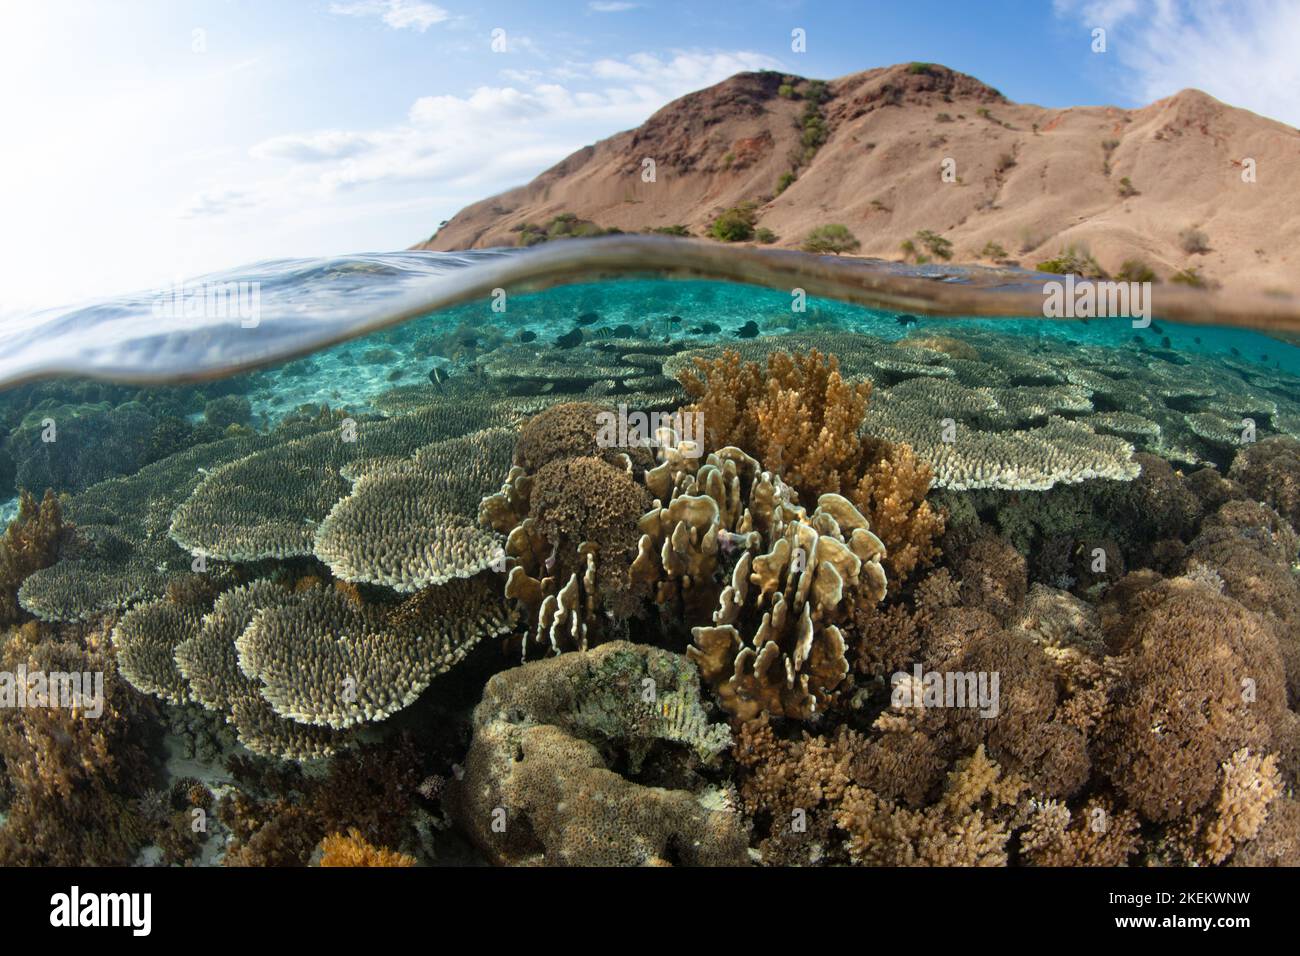 Eine Reihe von Korallen gedeiht auf einem flachen, gesunden Riff in der Nähe von Komodo, Indonesien. Dieses Gebiet, innerhalb des Korallendreiecks, hat eine hohe marine Artenvielfalt. Stockfoto